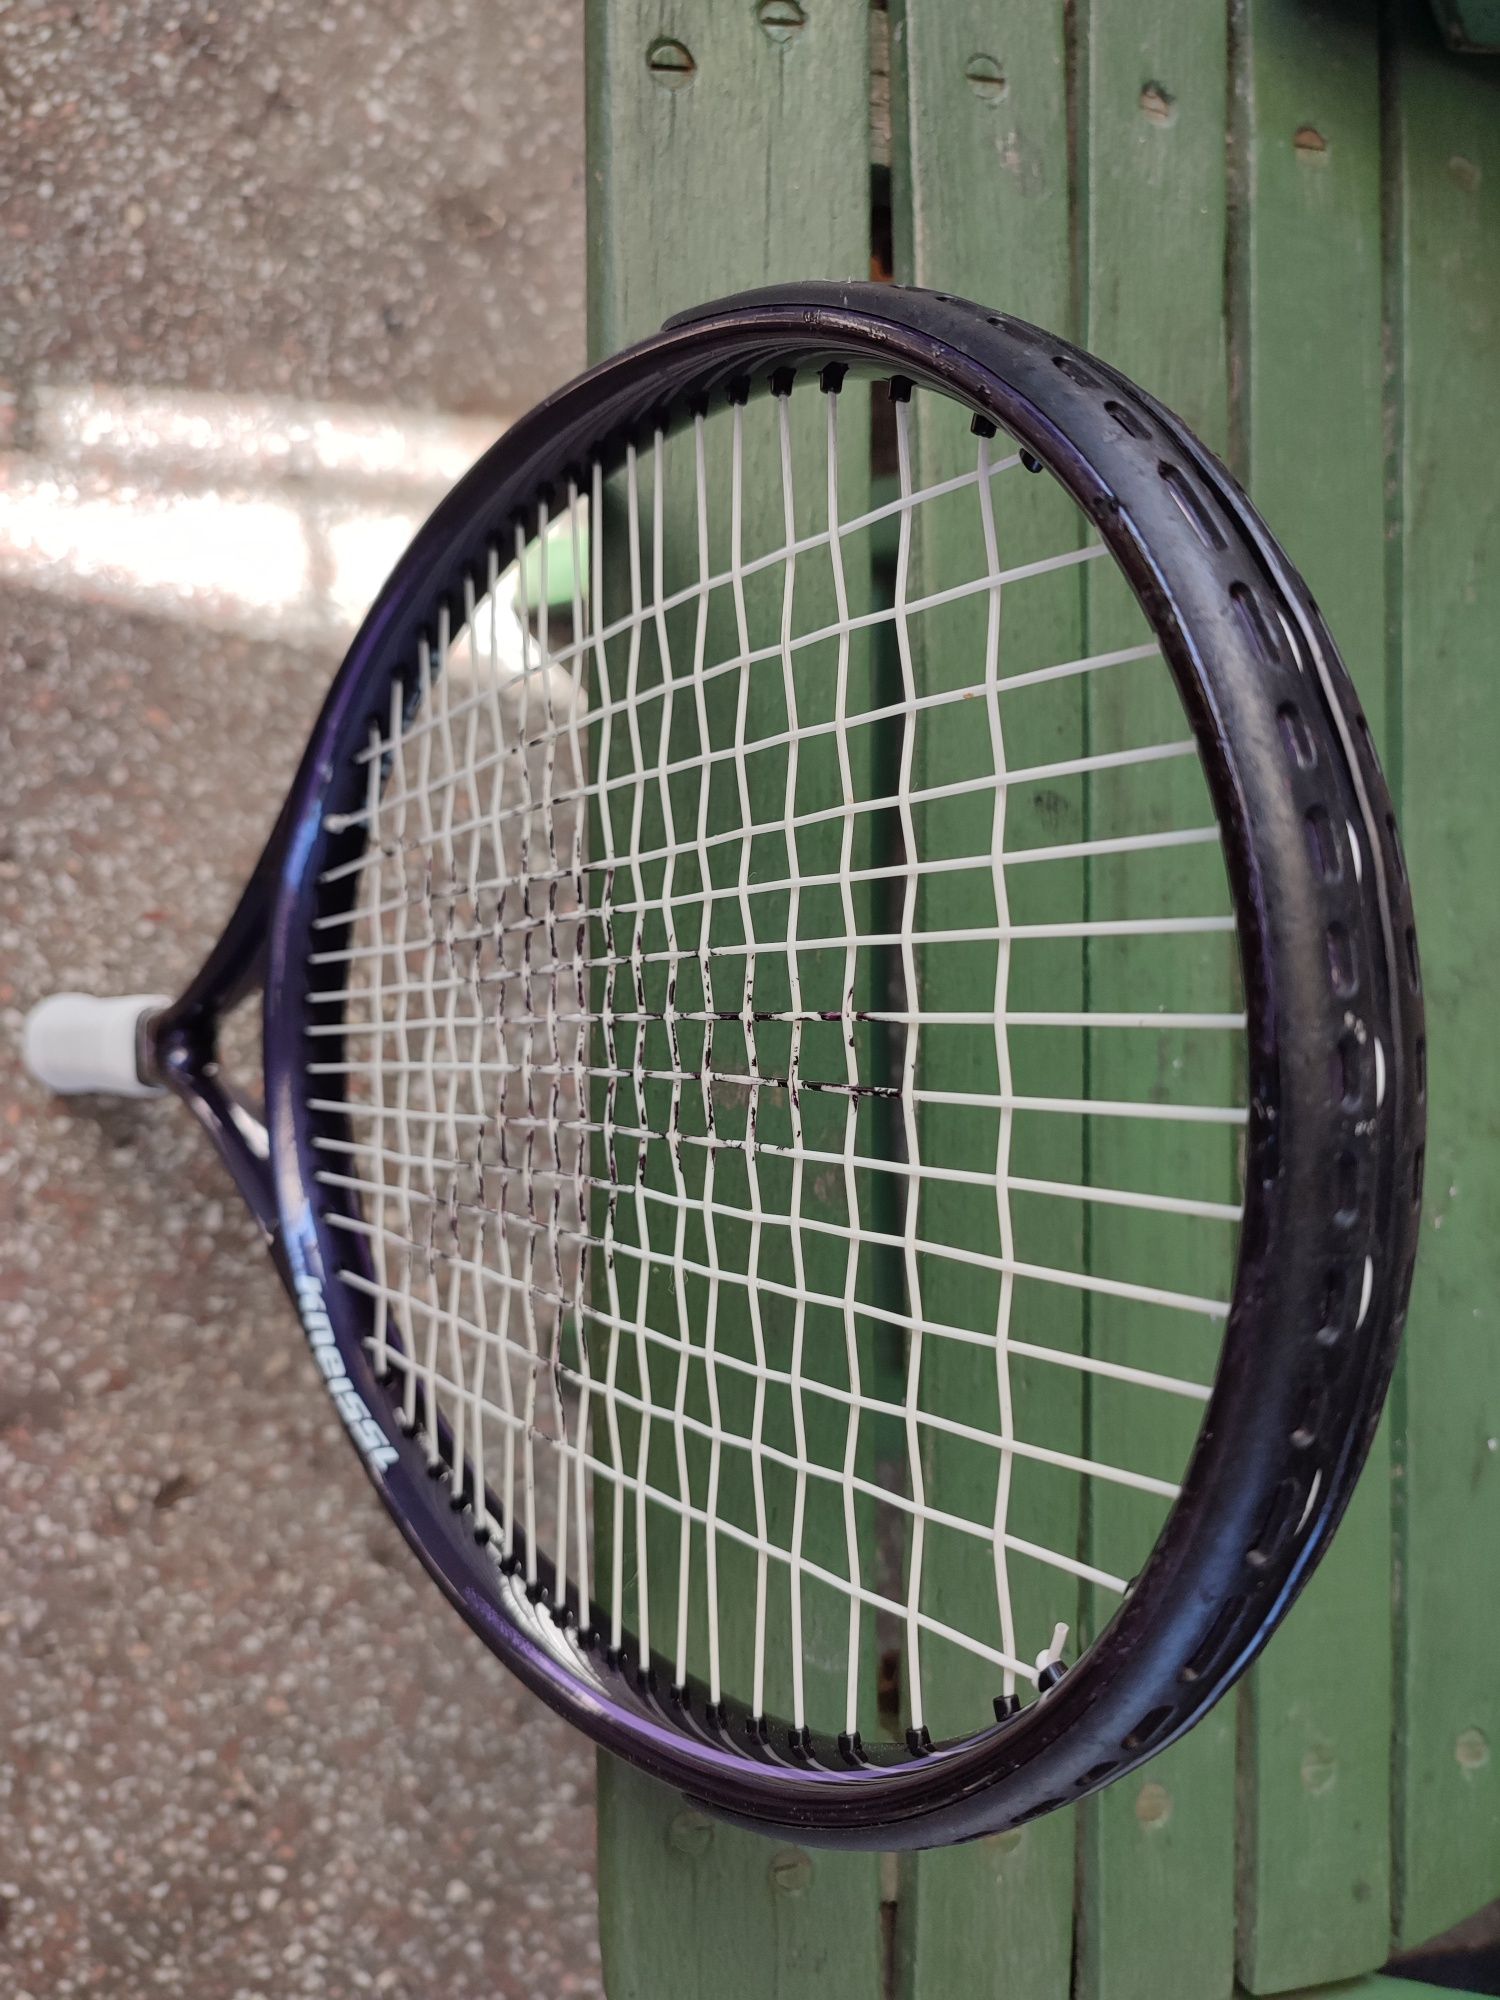 Kneissl Spark Pro Style-Racheta tenis carbon